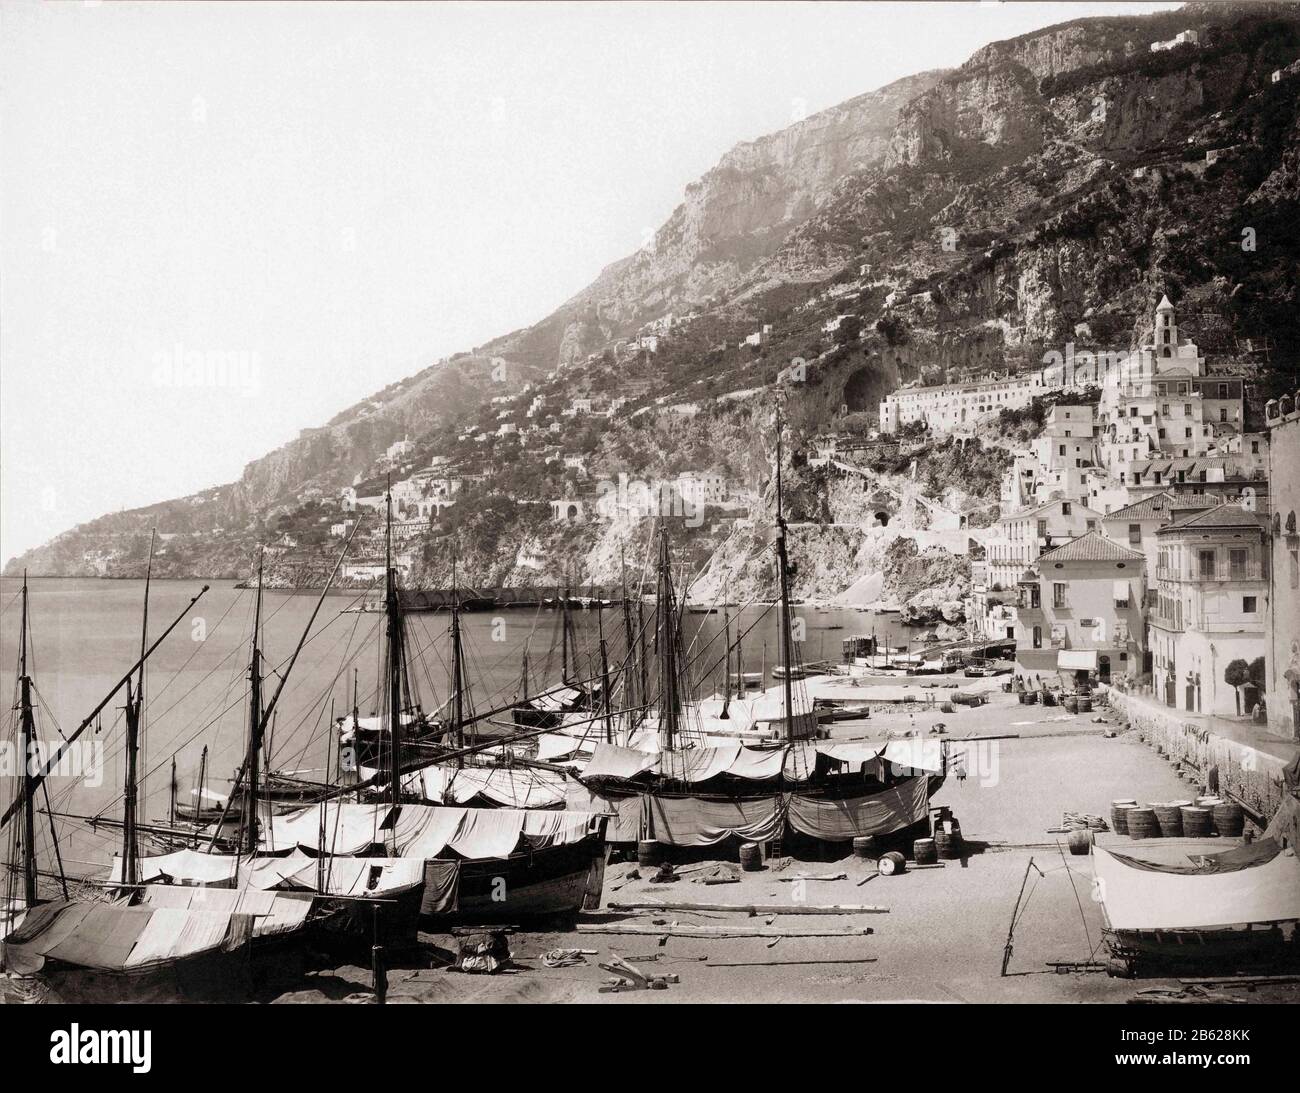 Amalfi Hafen im späten 19. Jahrhundert. Nach einer Arbeit des deutschen Fotografen Giorgio Sommer, 1834-1914 Stockfoto